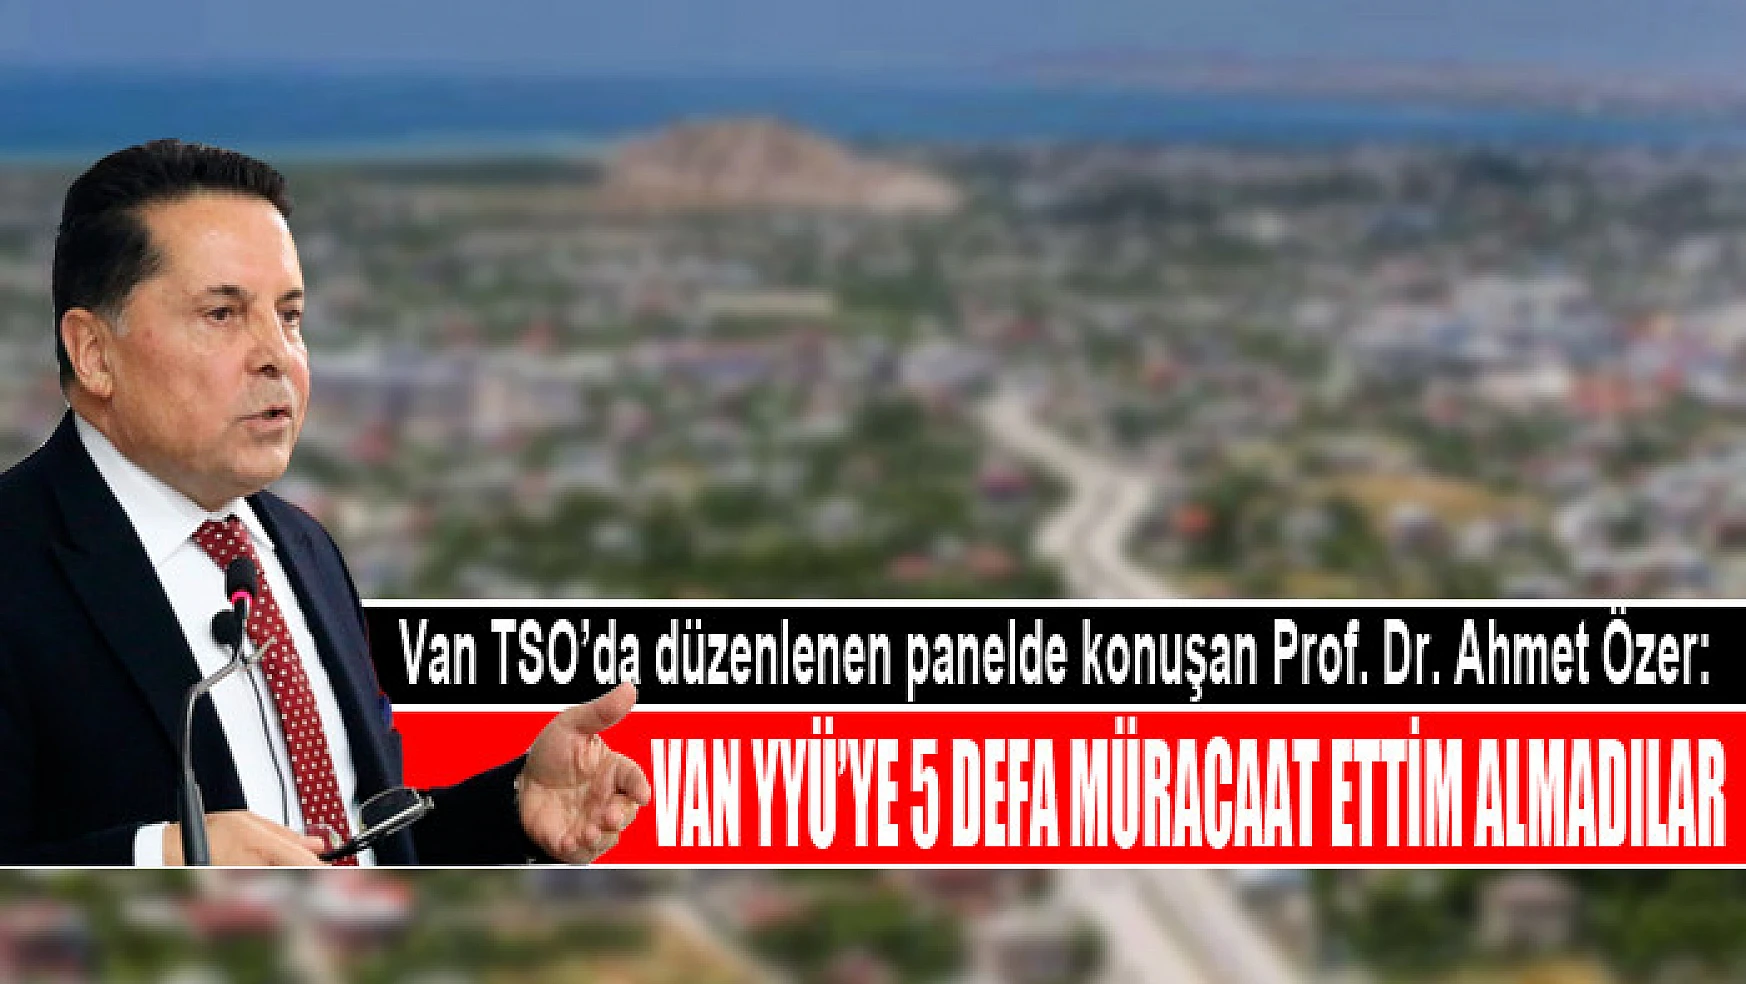 Van TSO'da düzenlenen panelde konuşan Prof. Dr. Ahmet Özer: Van YYÜ'ye 5 defa müracaat ettim almadılar